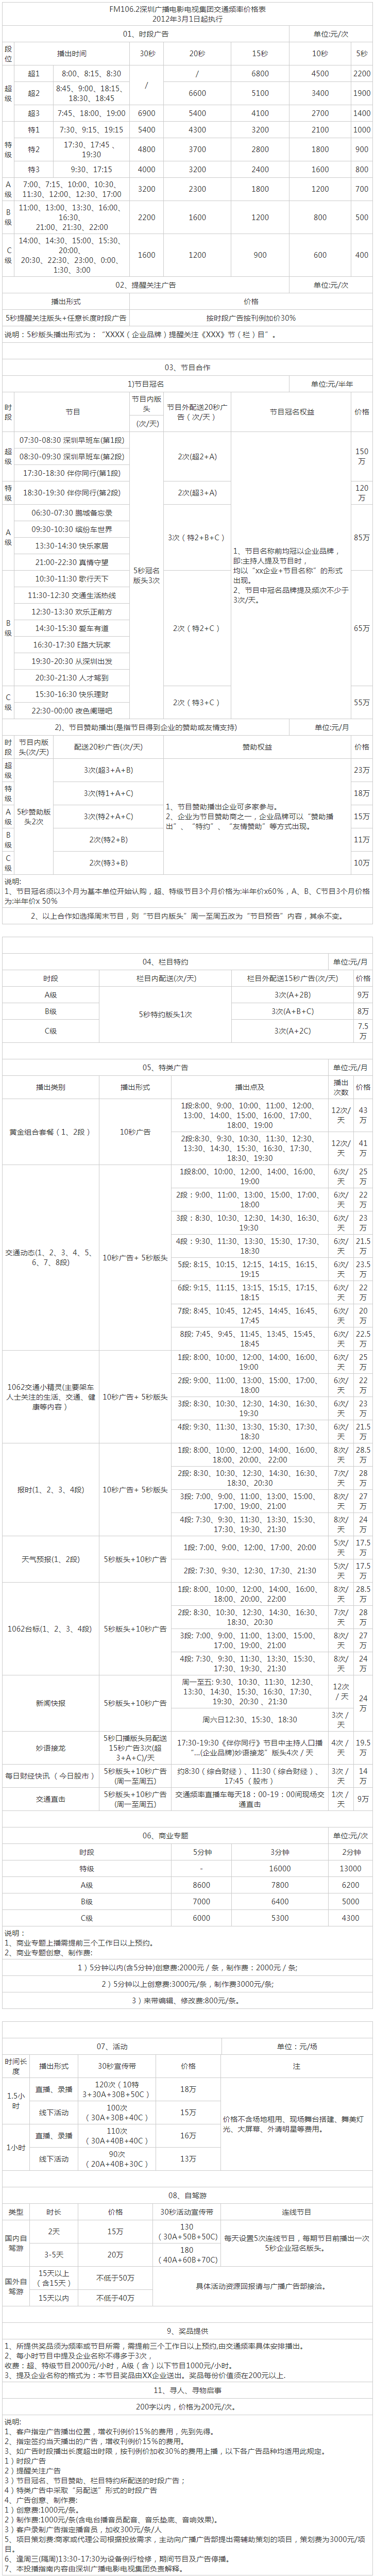 2012深圳人民广播电台交通频率 FM106.2广告报价表.png